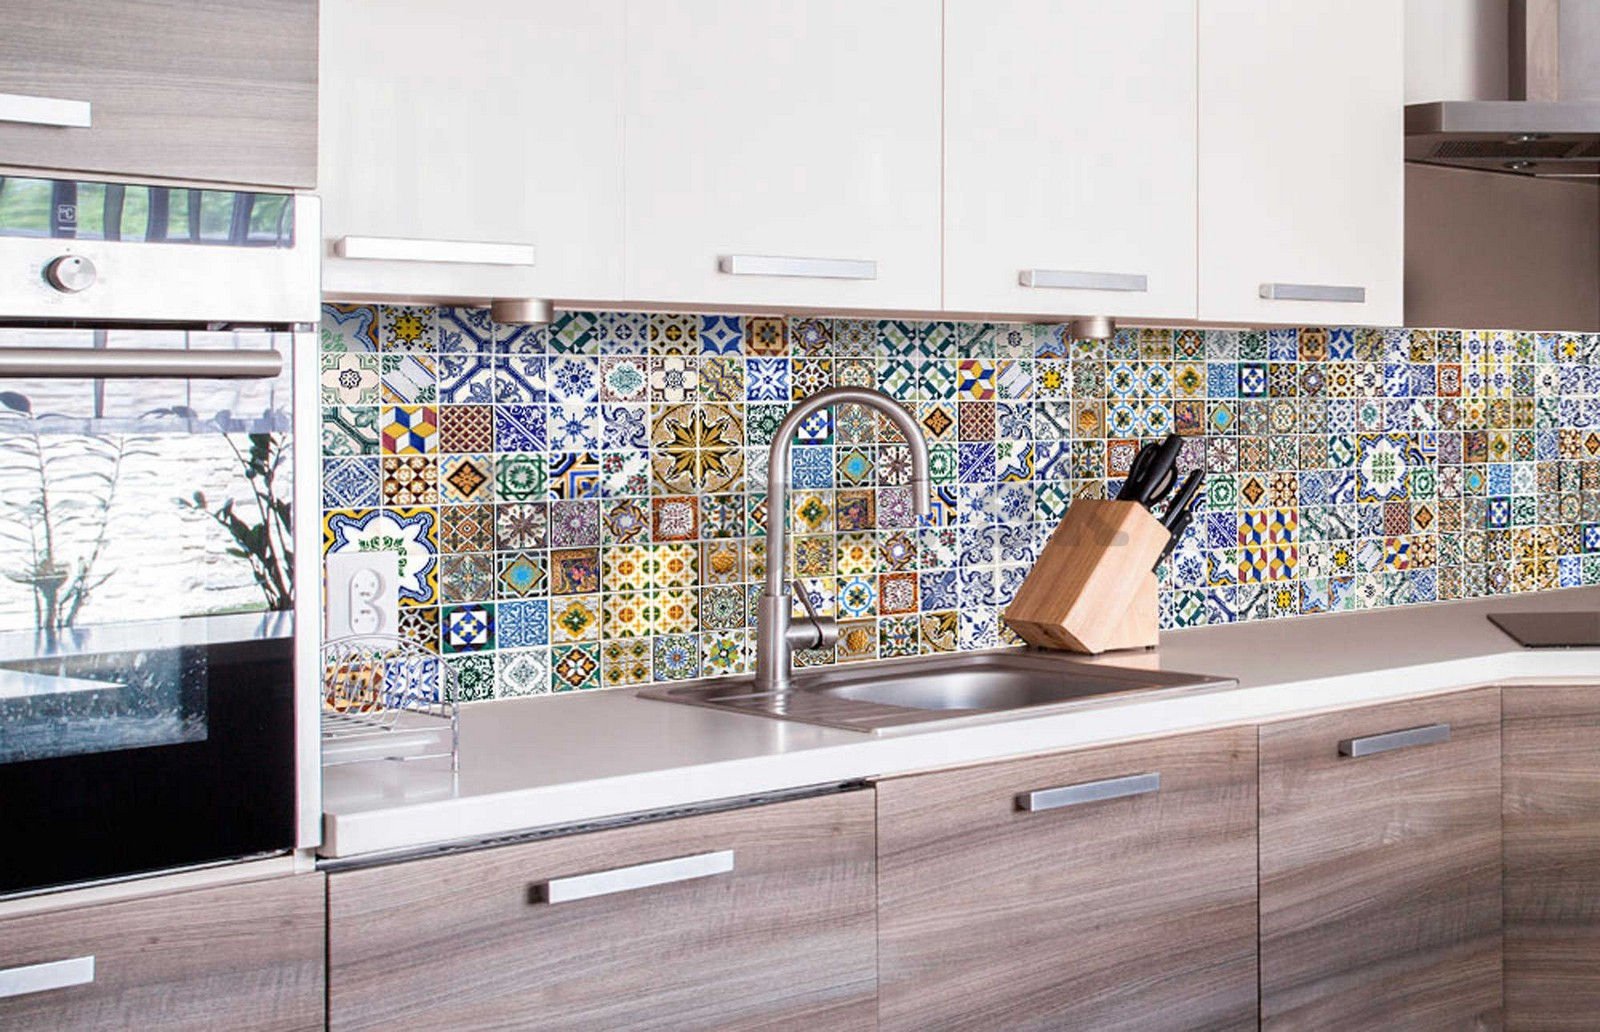 Samolepiaca umývateľná tapeta za kuchynskú linku - Portugalské dlaždice, 260x60 cm